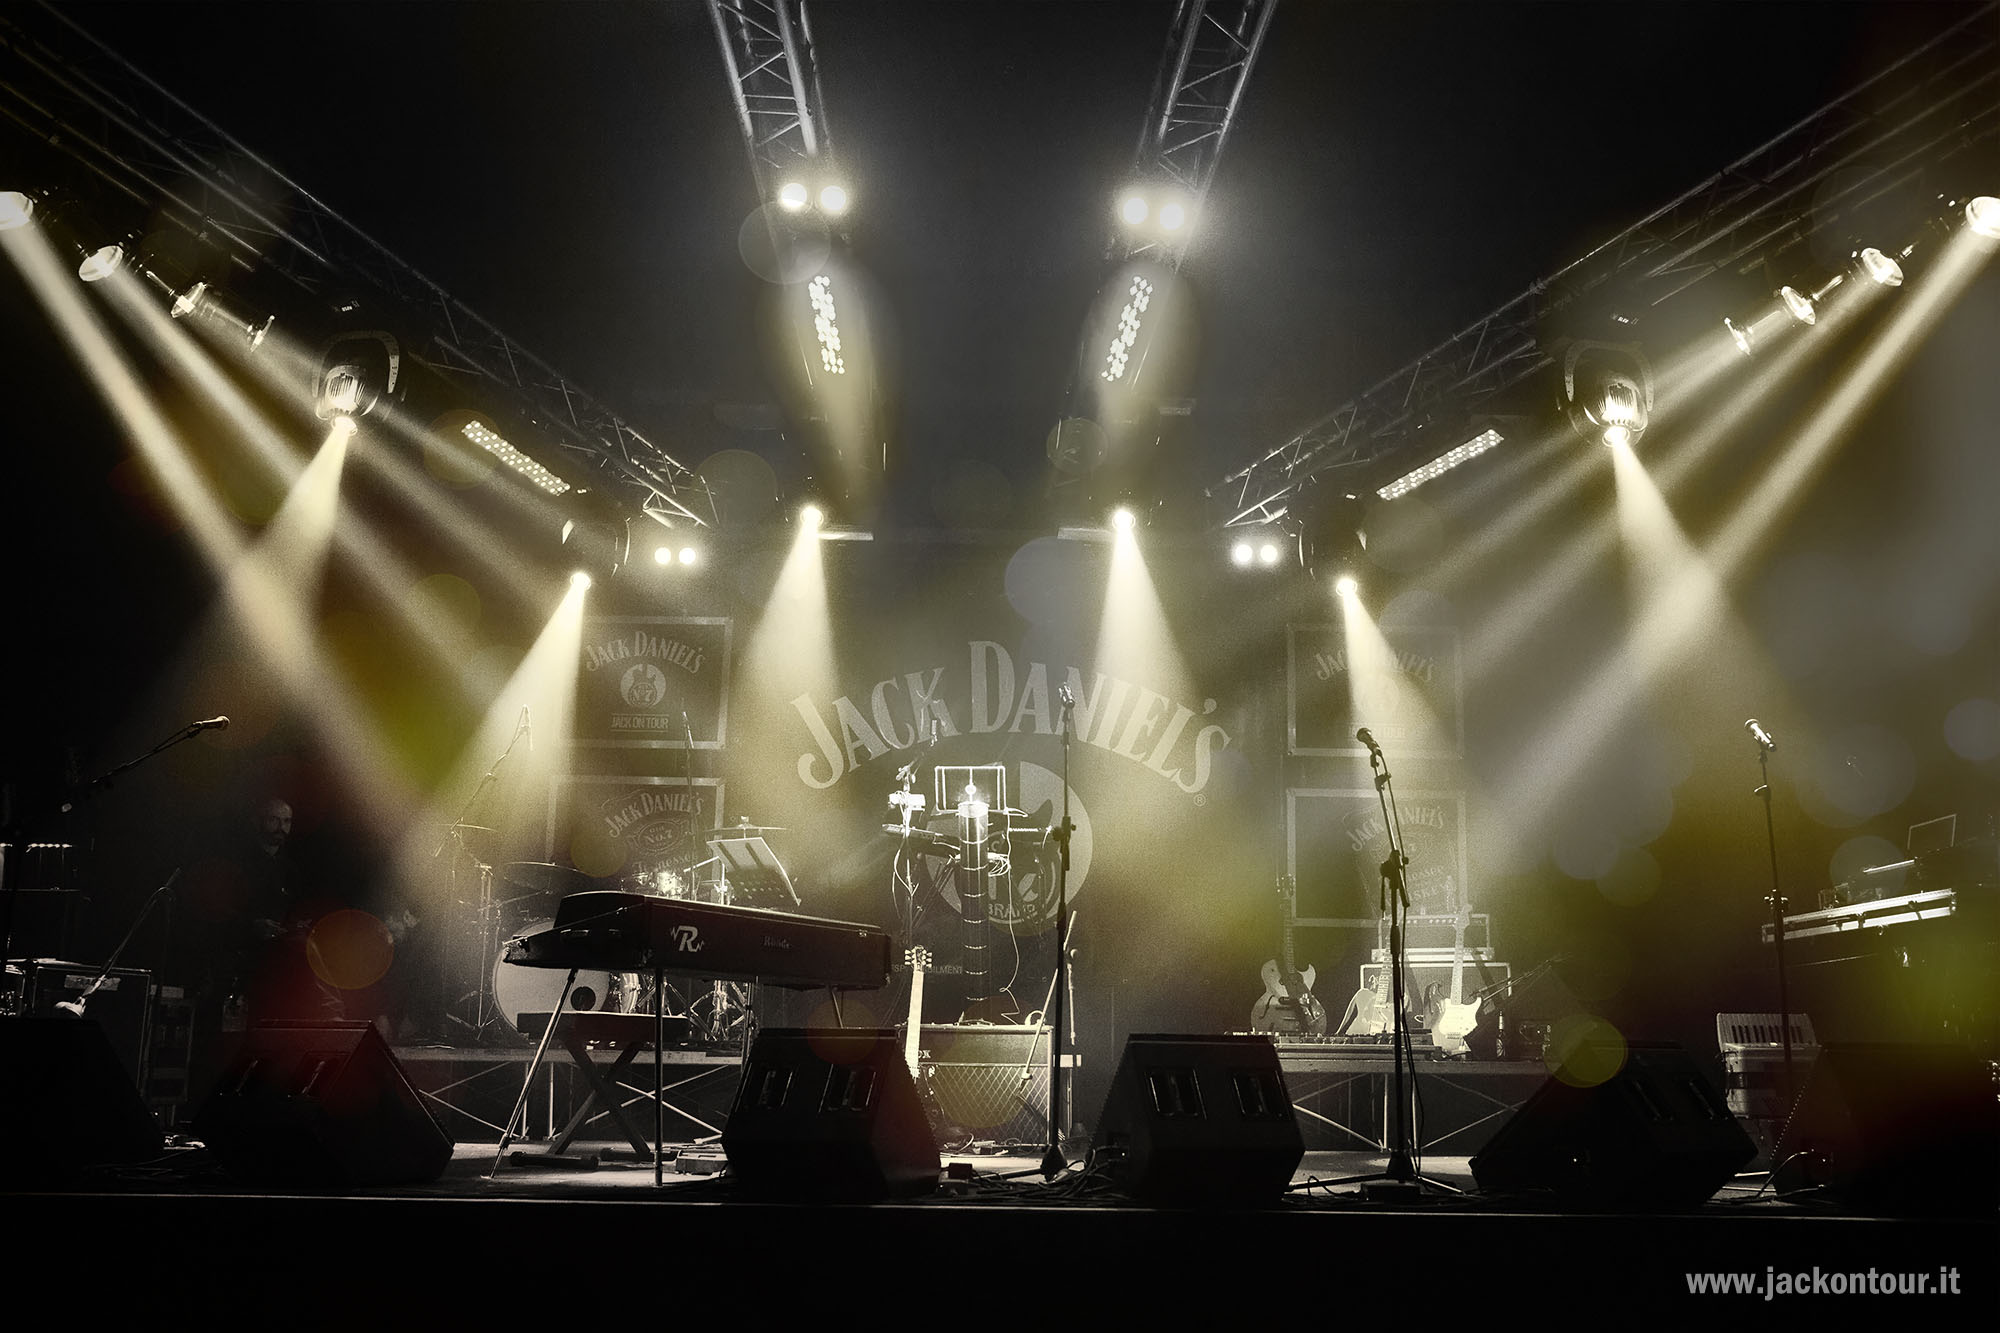  Riparte Jack On Tour, il viaggio musicale di Jack Daniel’s